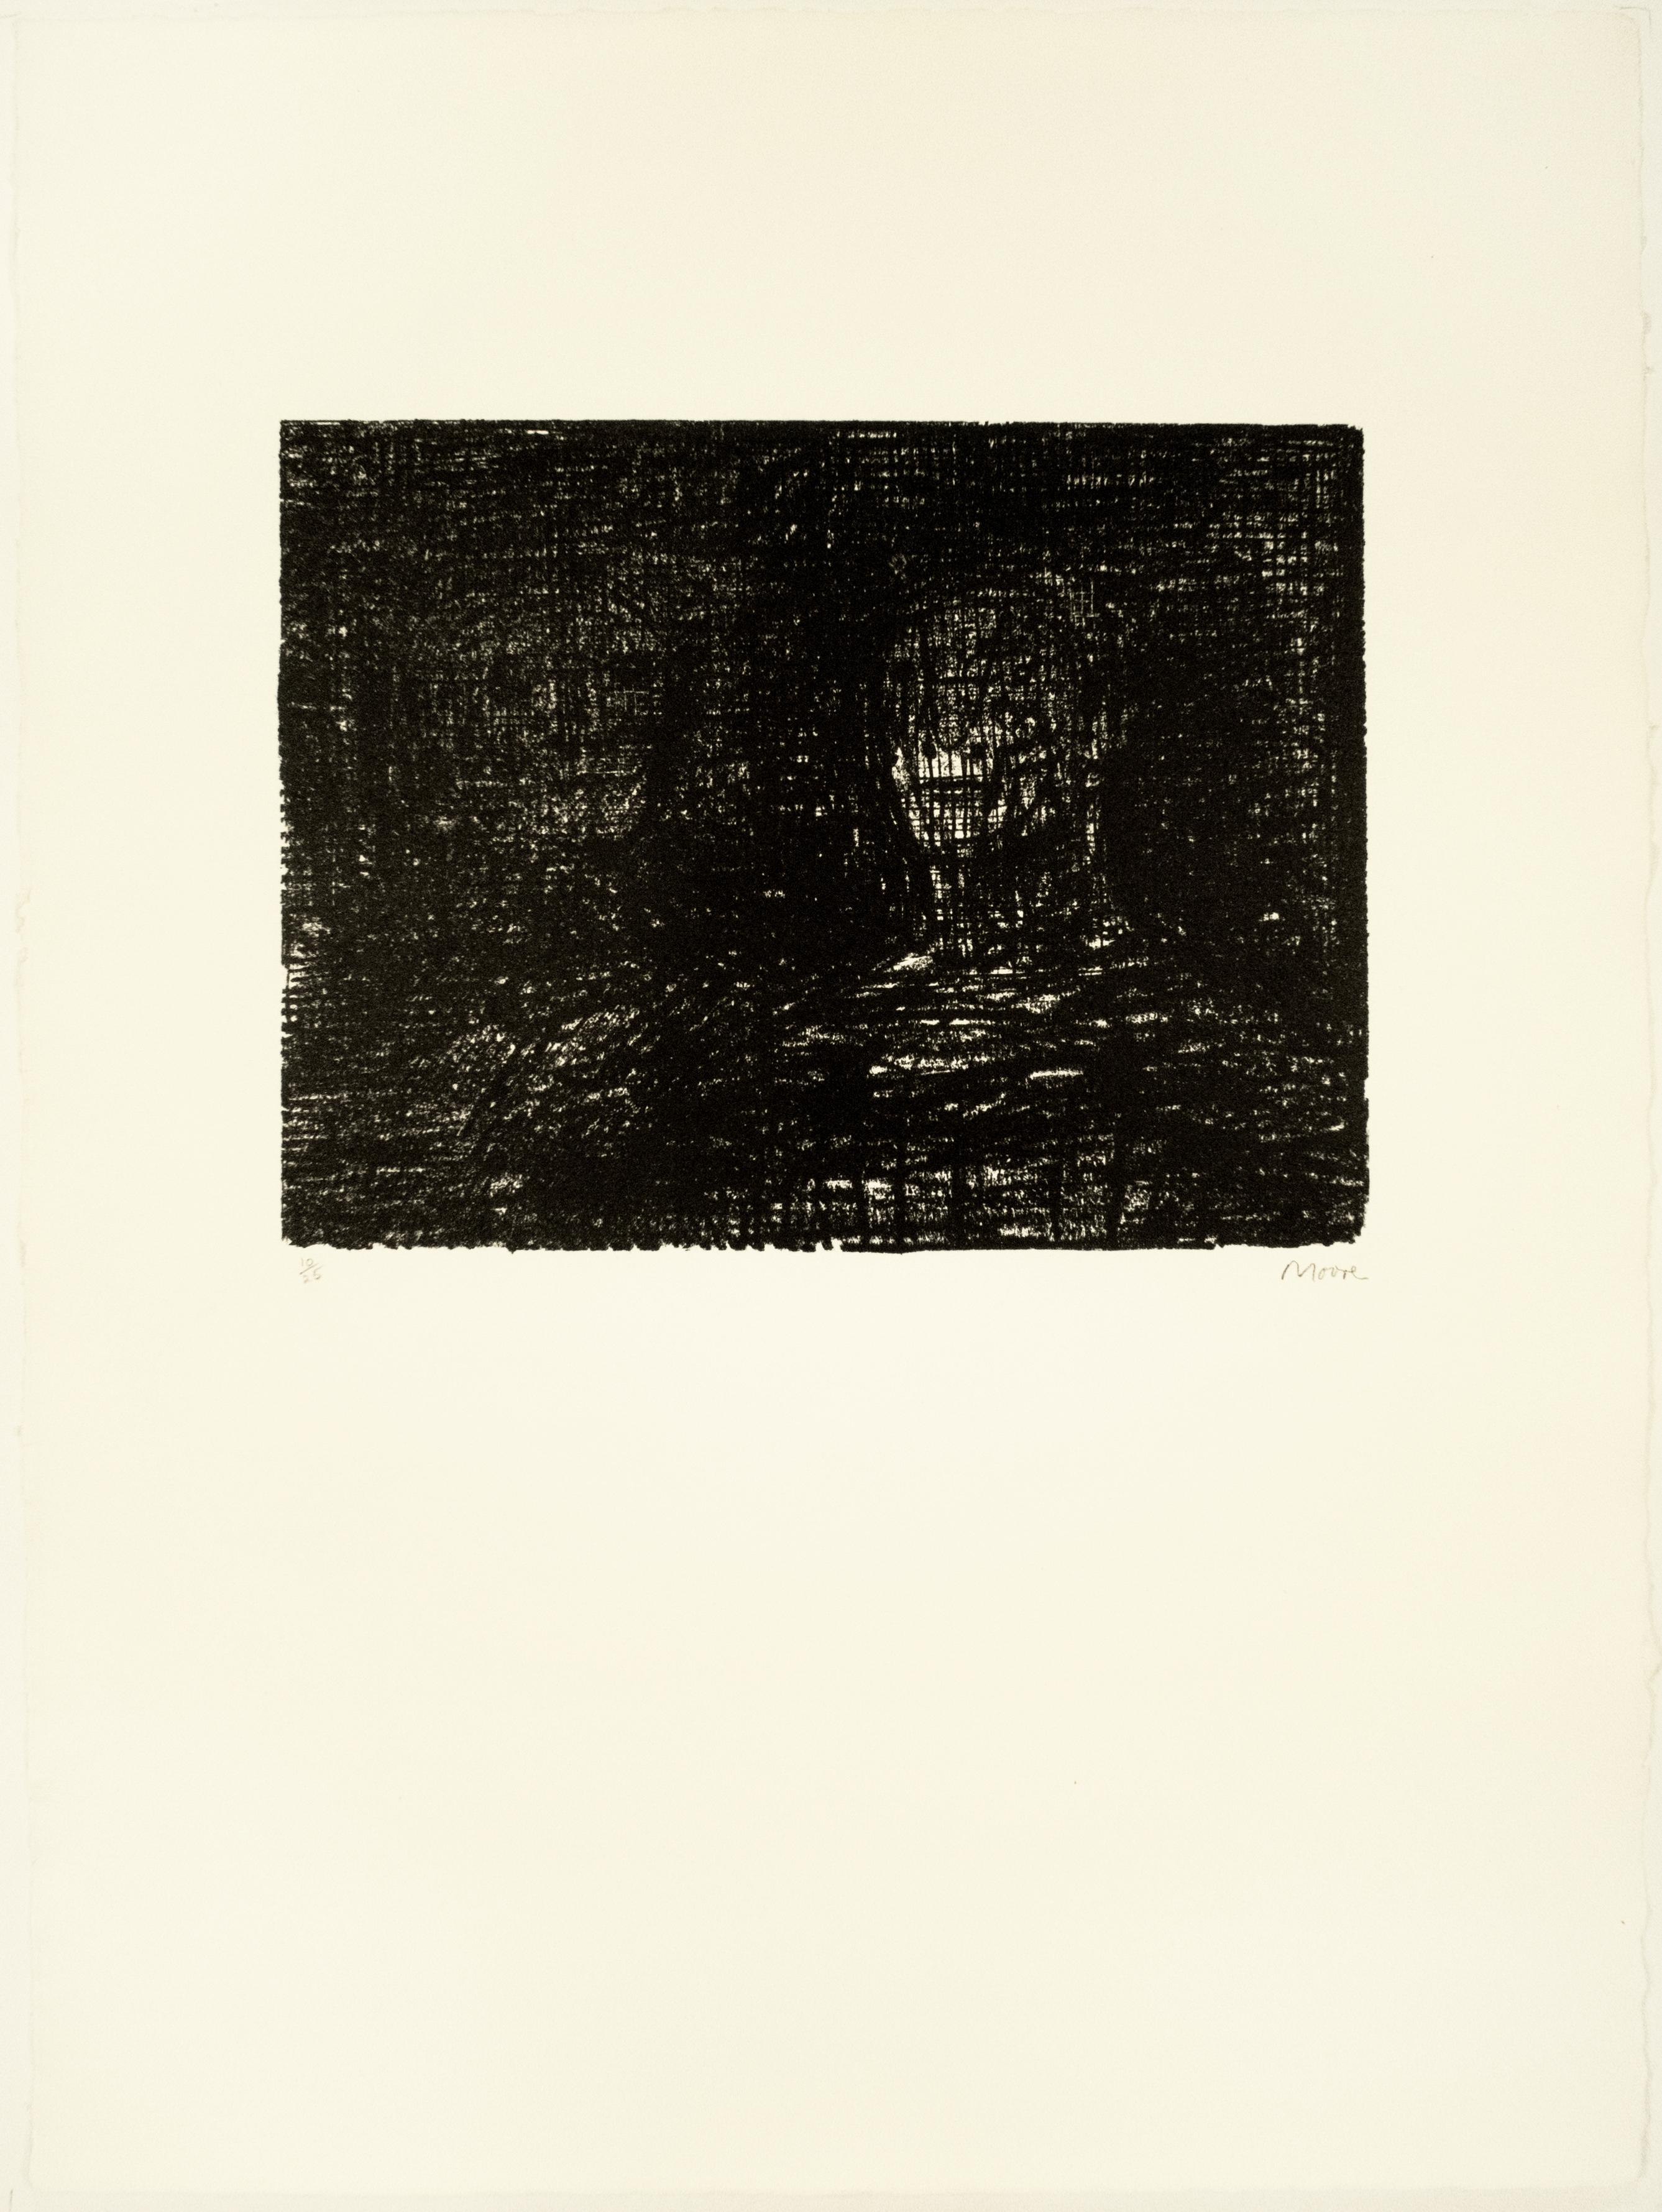 Armourer I : dessin noir basé sur la poésie d'Auden, paysage du Yorkshire - Print de Henry Moore